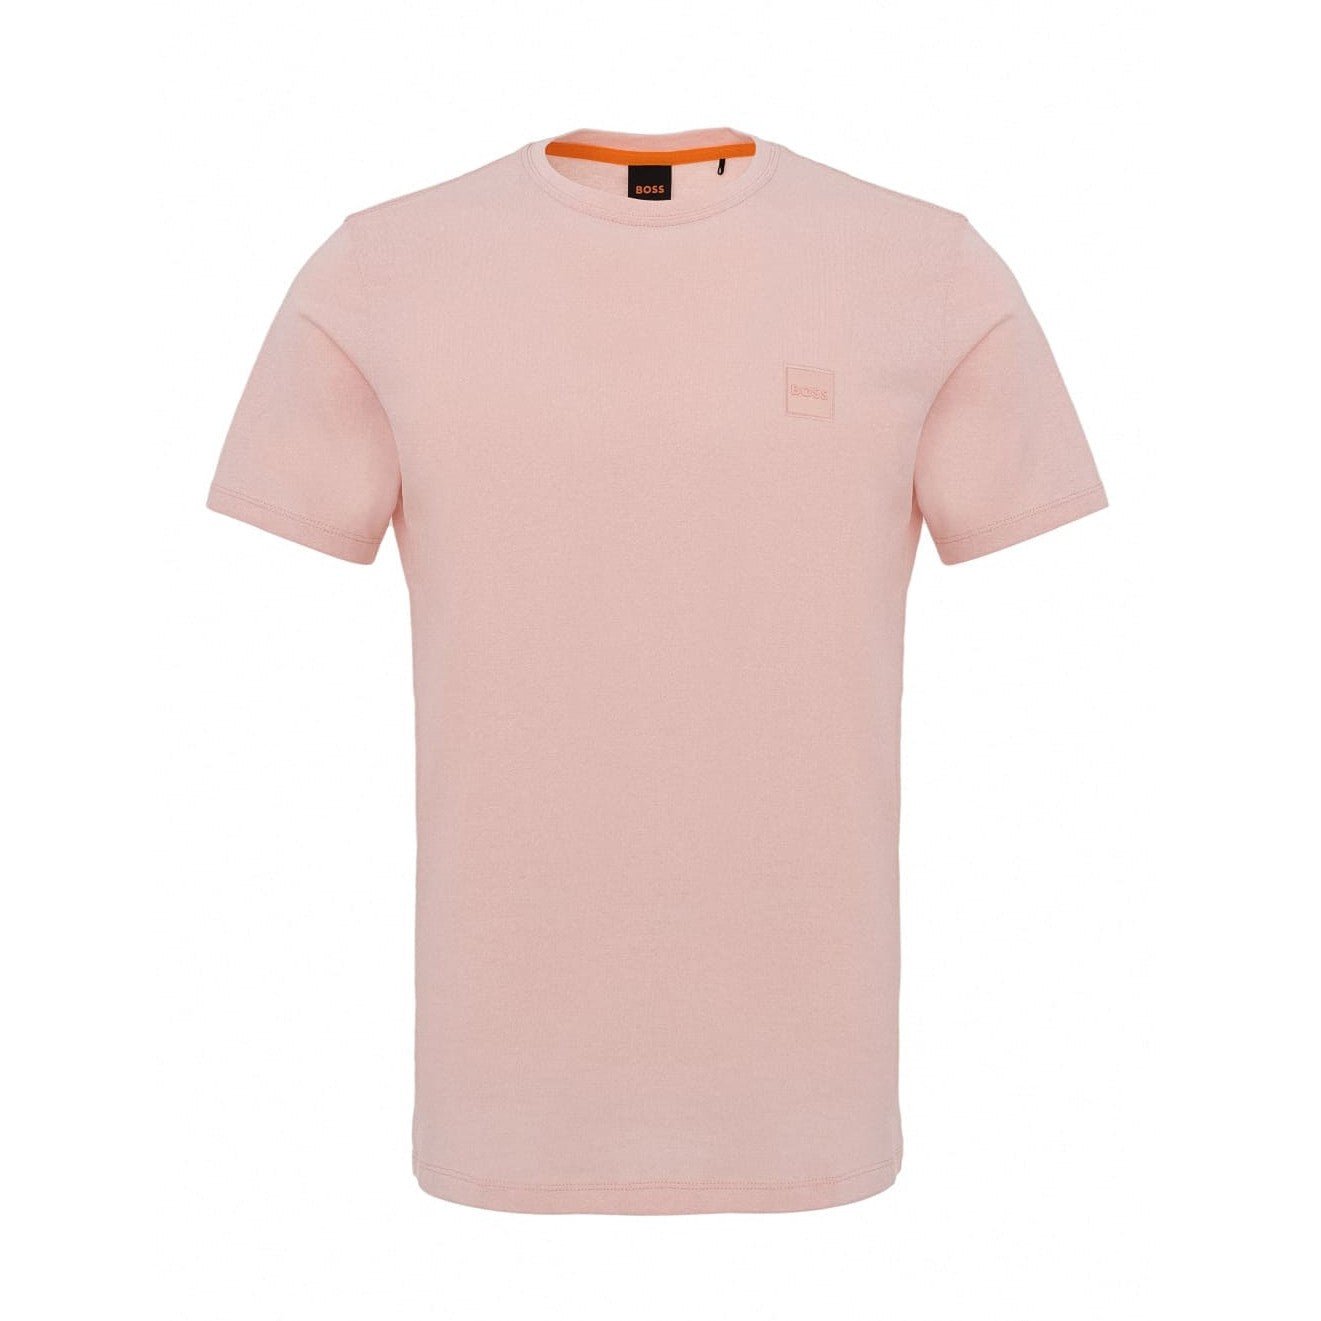 Boss Orange Tales T-Shirt - 694 Pink - Escape Menswear